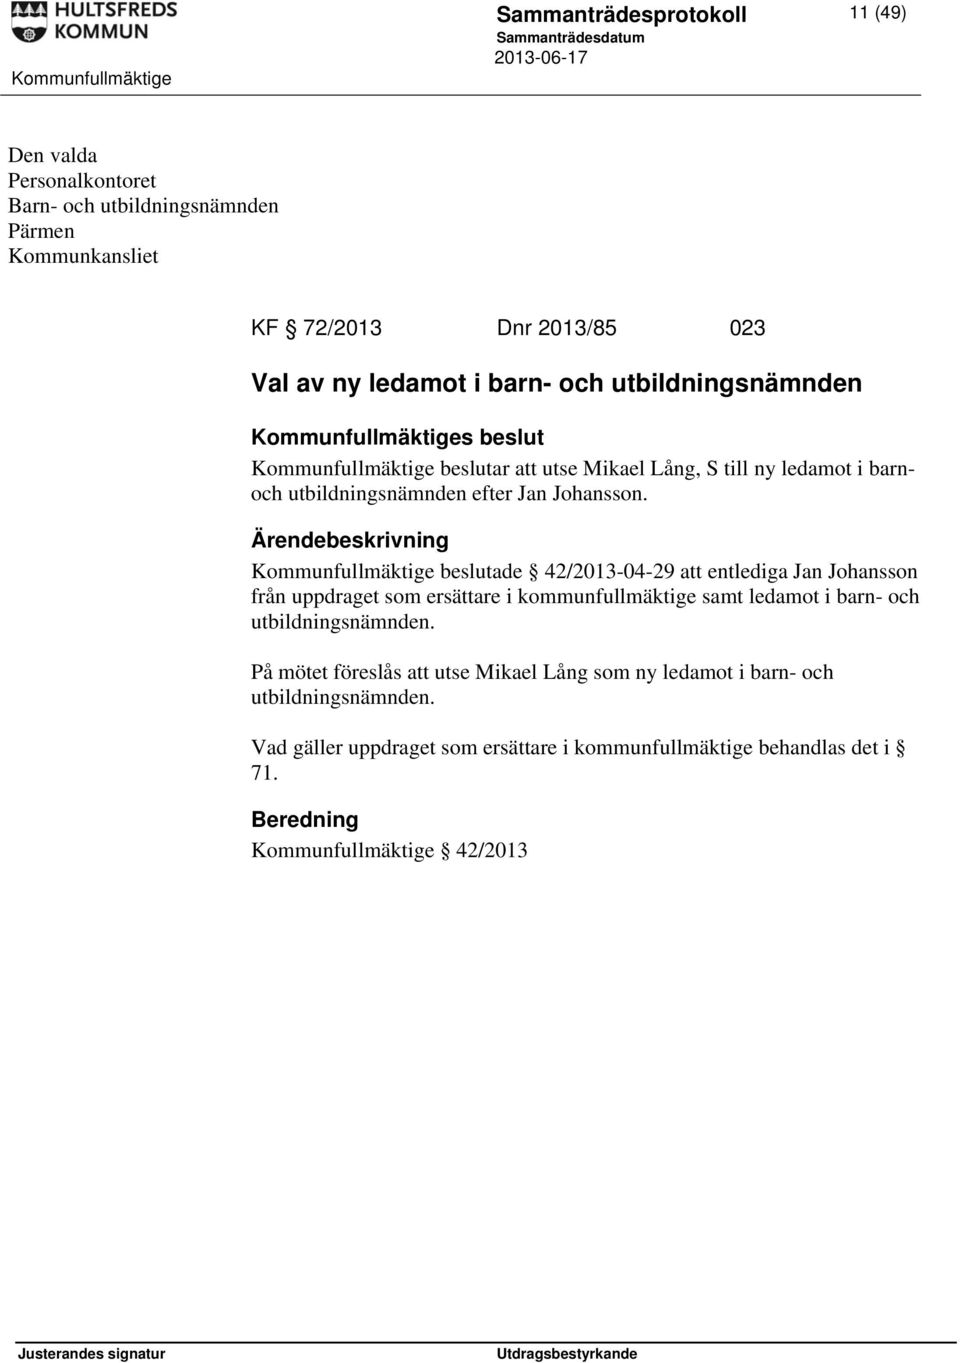 Kommunfullmäktige beslutade 42/2013-04-29 att entlediga Jan Johansson från uppdraget som ersättare i kommunfullmäktige samt ledamot i barn- och utbildningsnämnden.